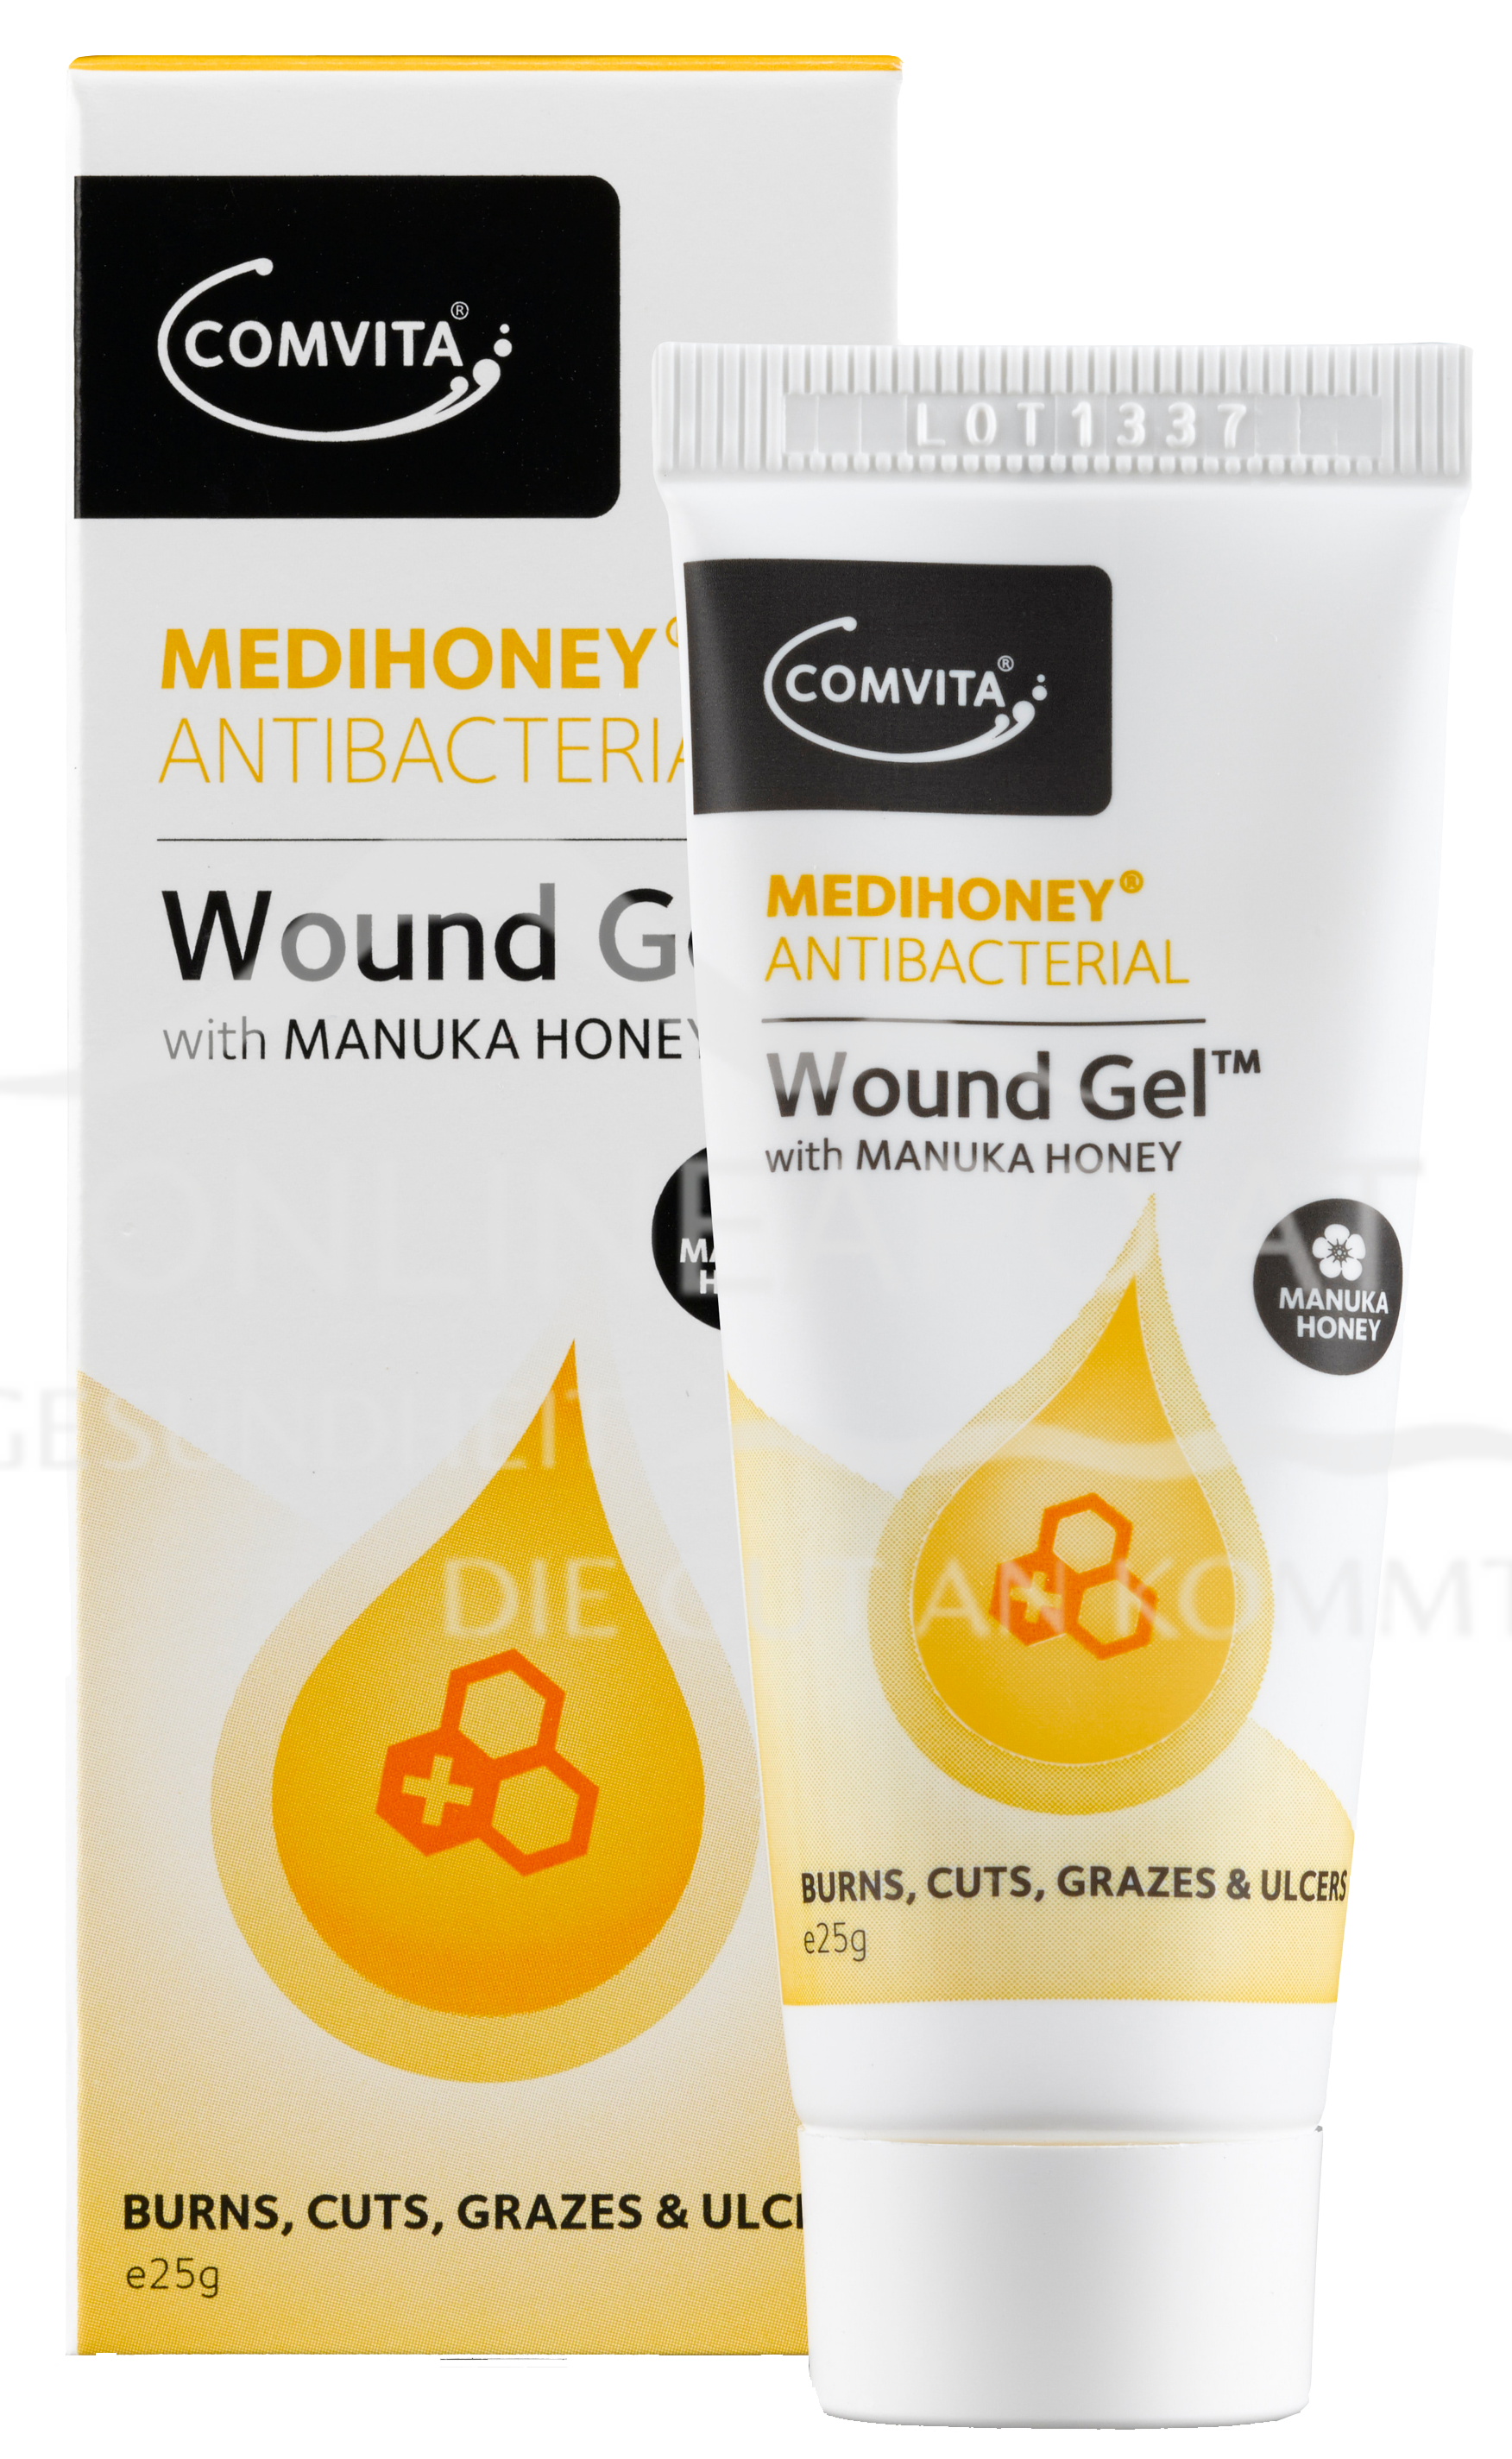 Medihoney® Antibacterial Wound Gel